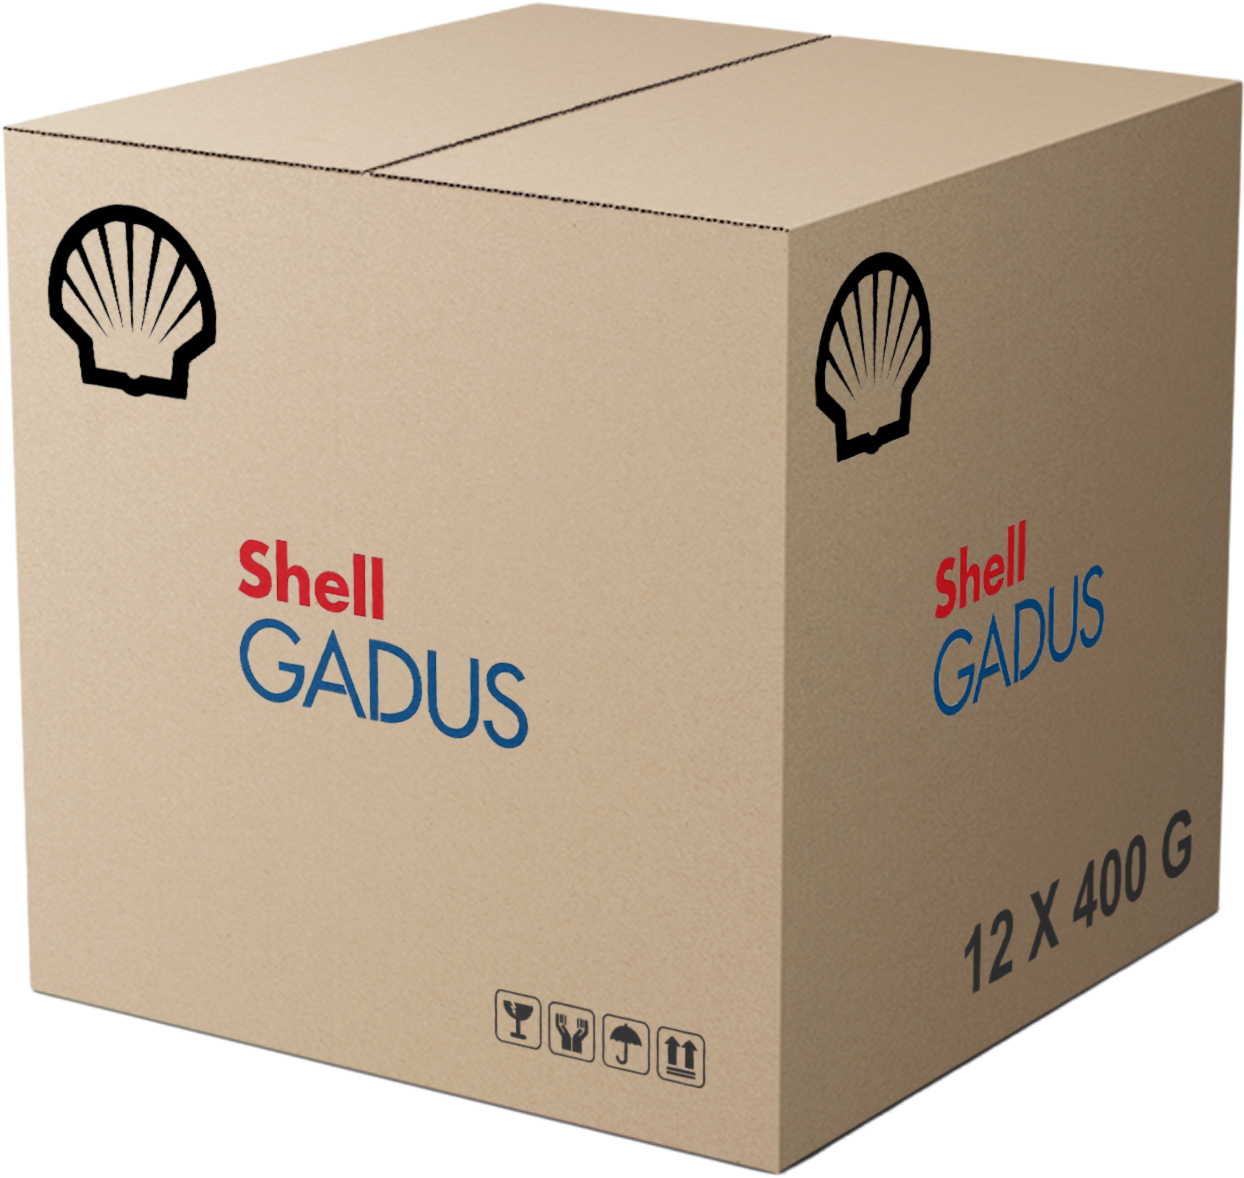 Shell Gadus S3 T100 2, 12 x 400 gr